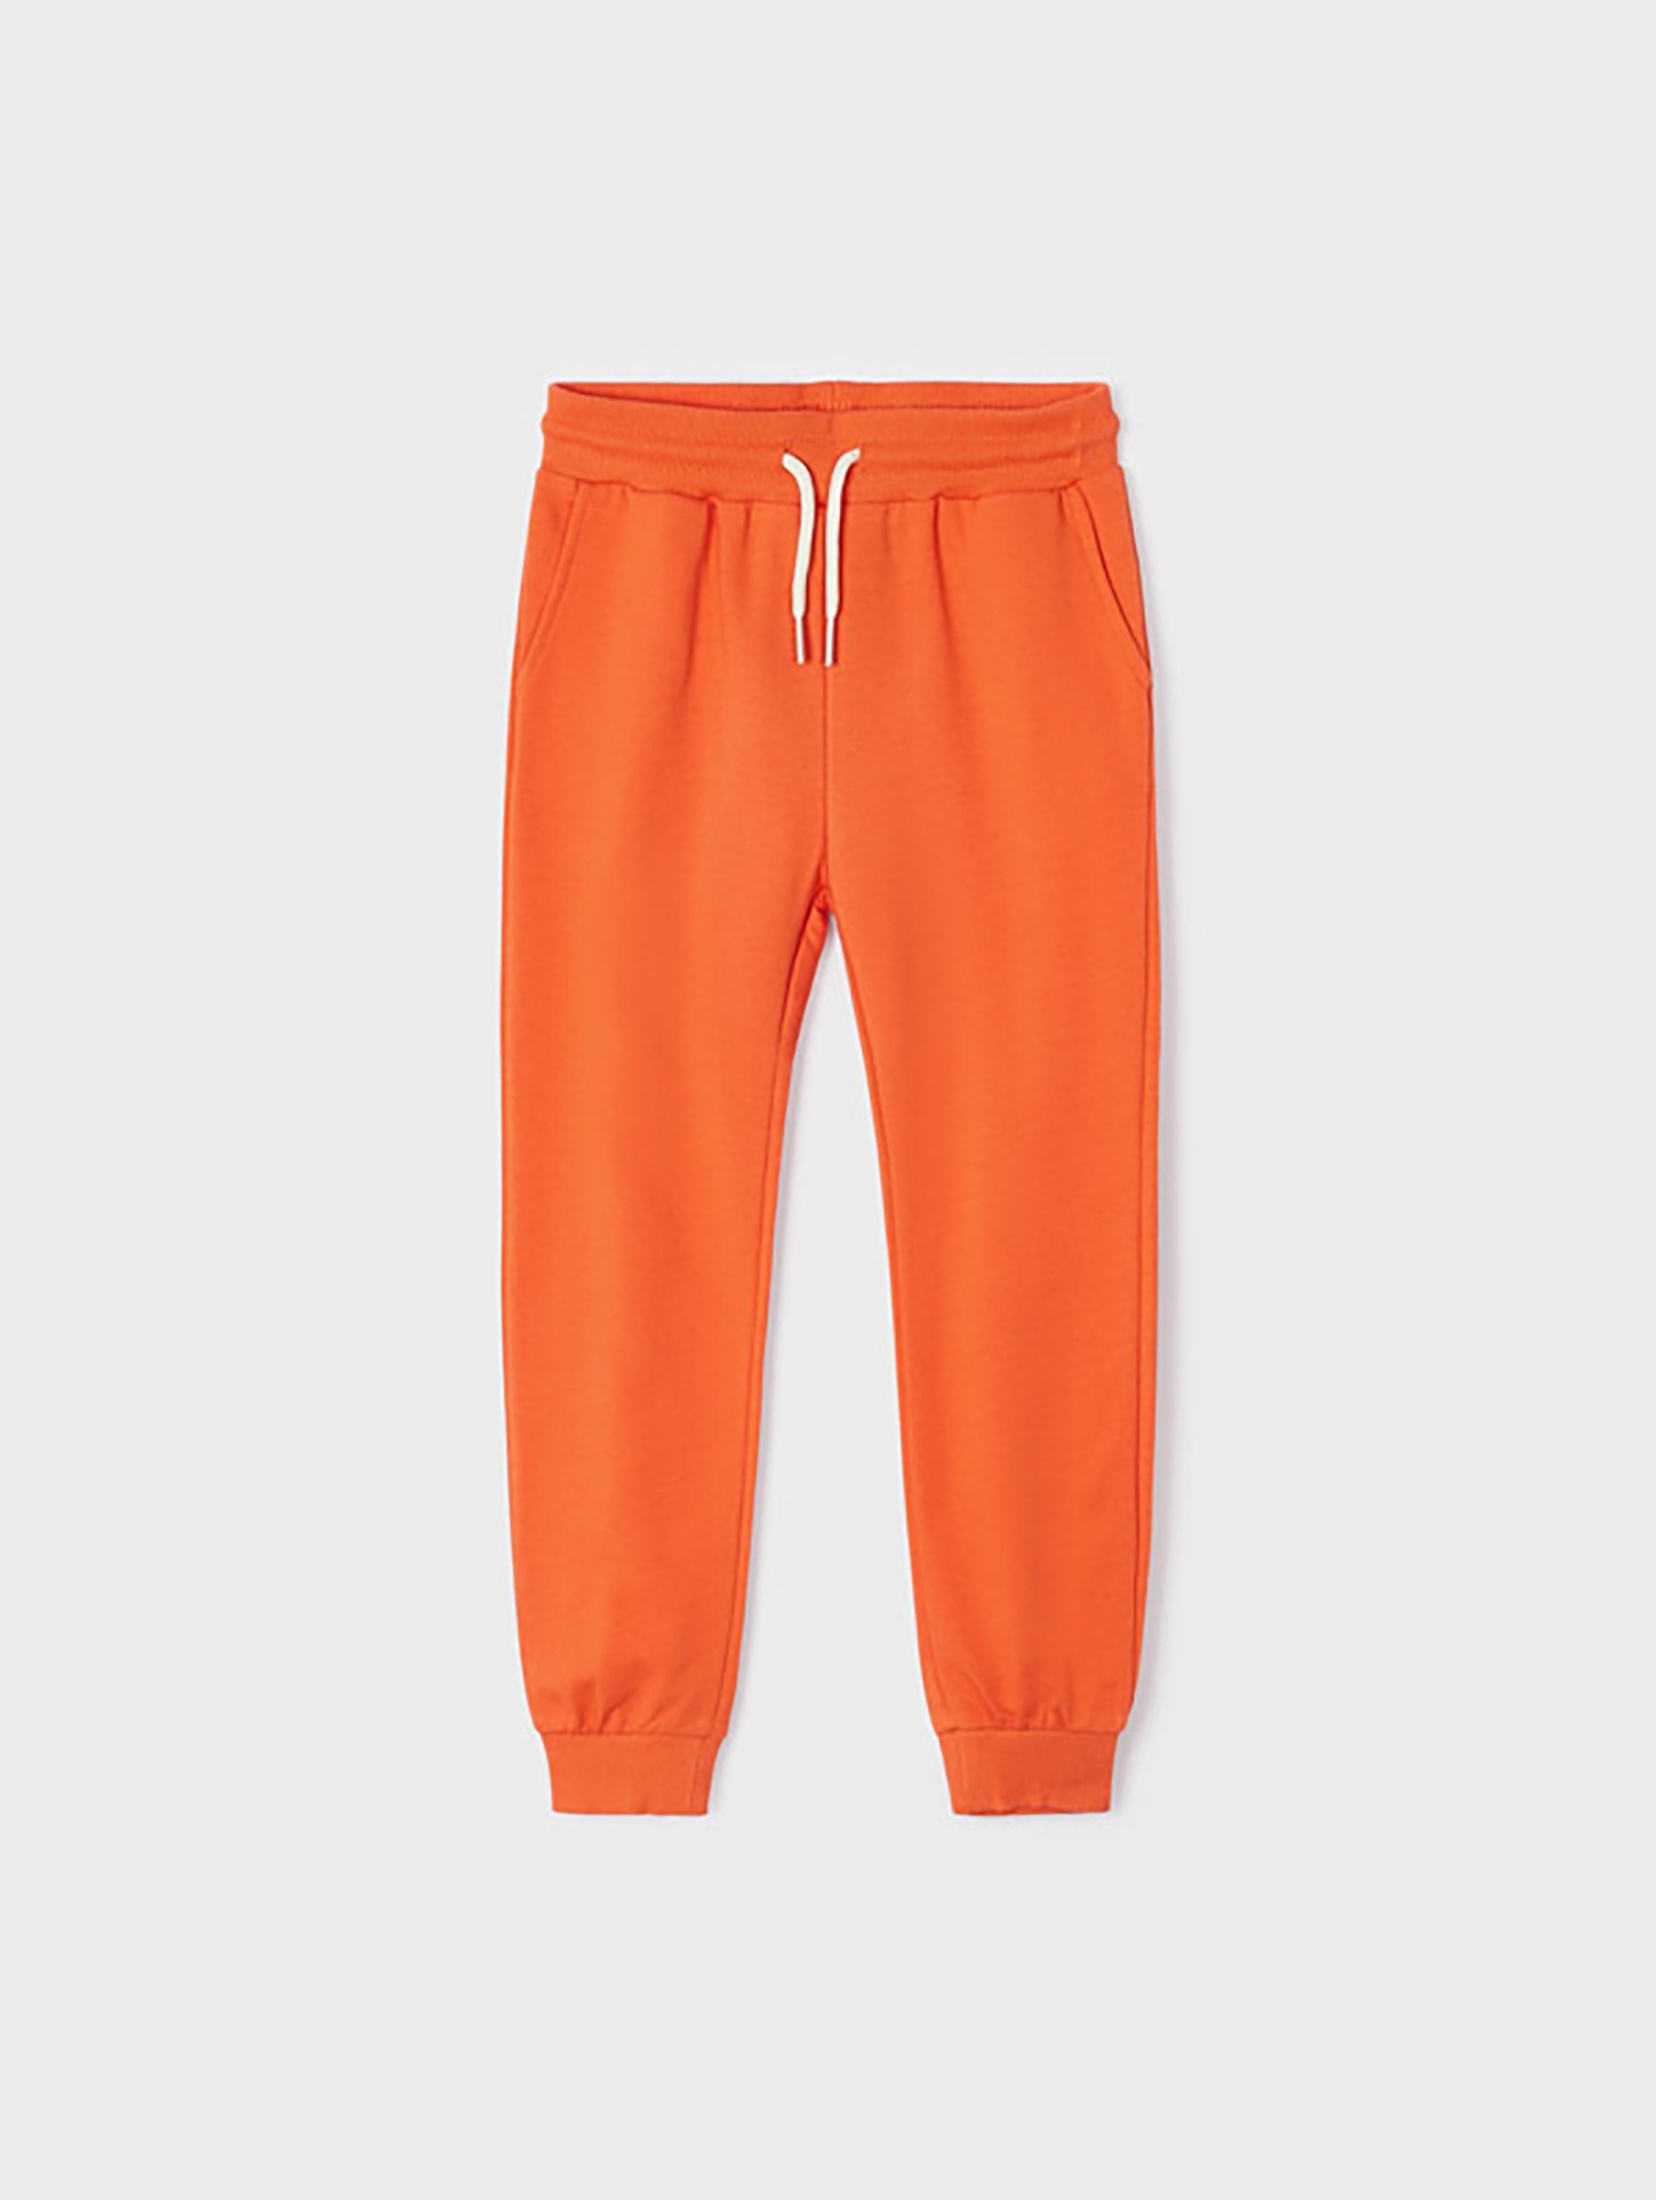 Spodnie dresowe dla chłopca Mayoral - pomarańczowe